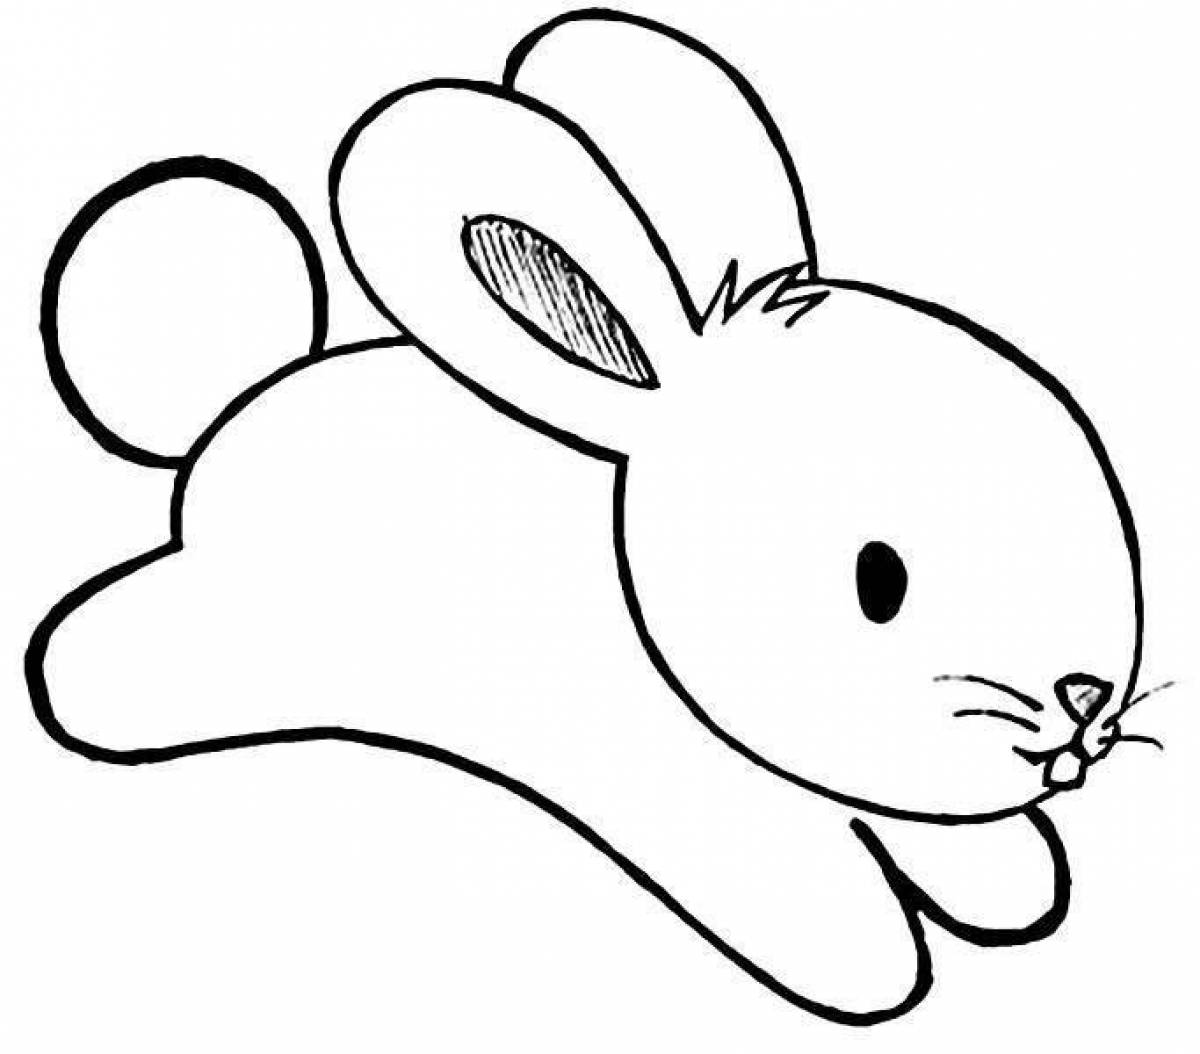 Wavy bunny coloring book